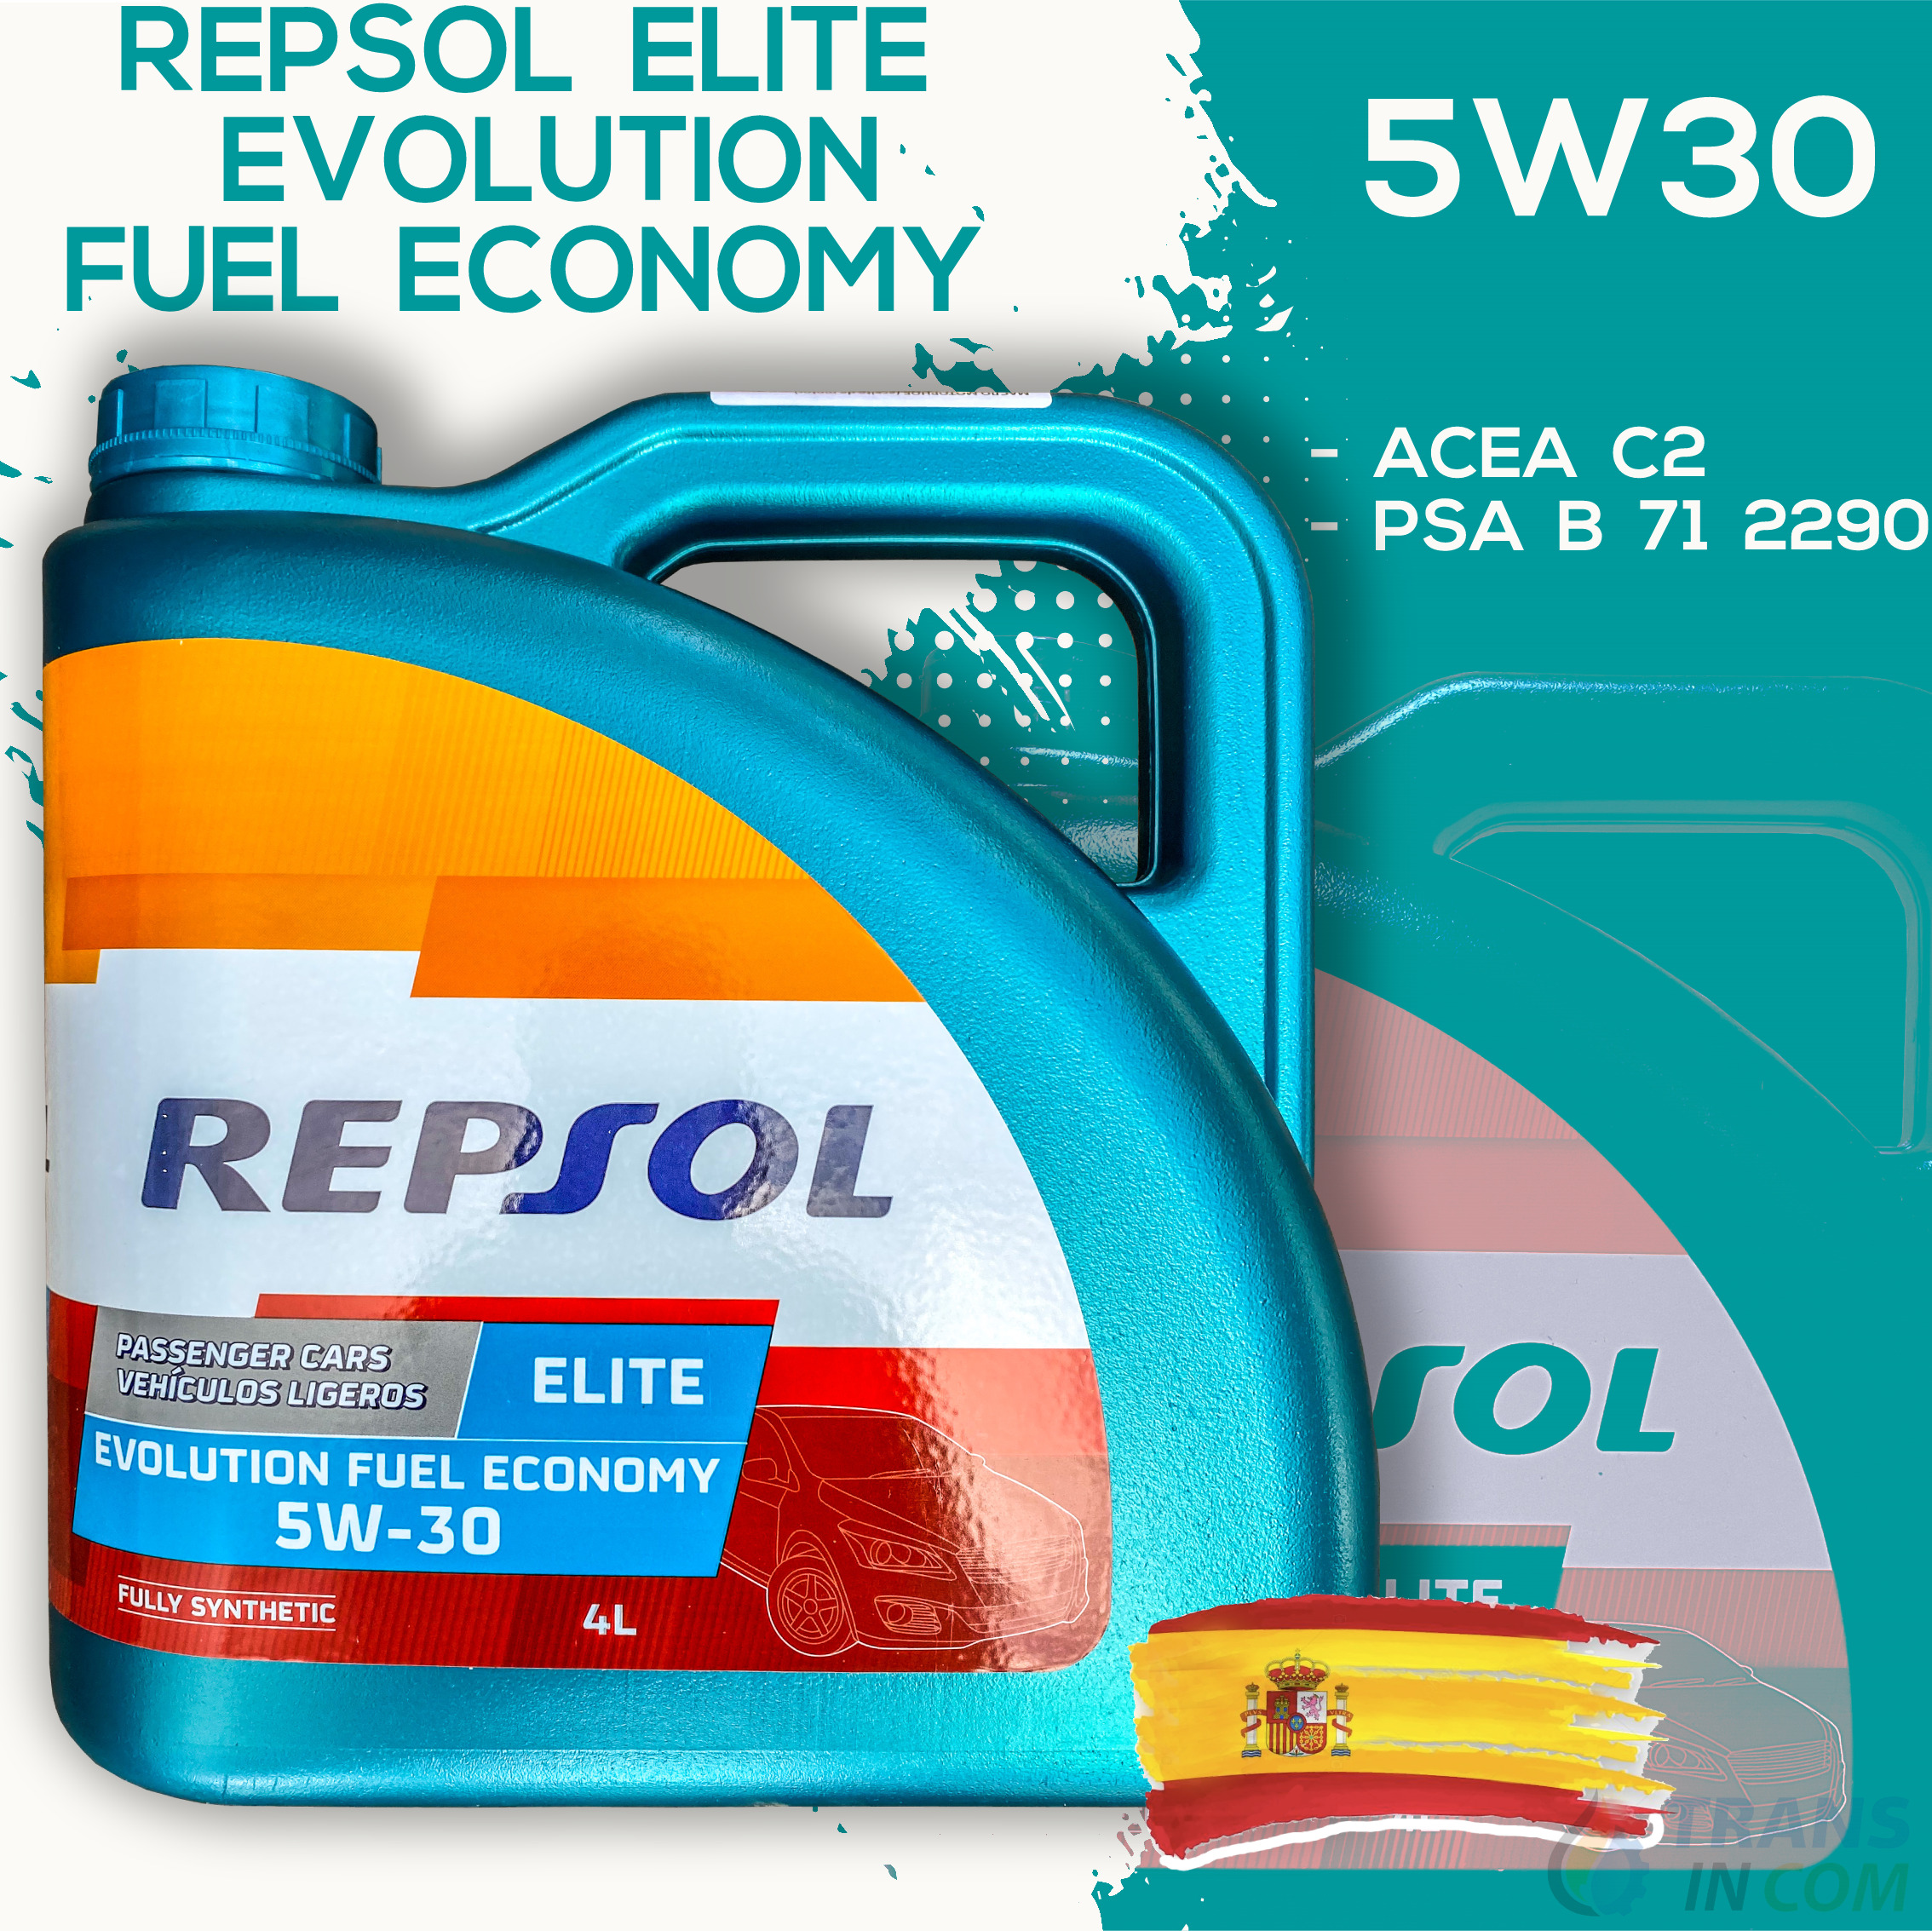 Масло repsol 5w30 elite. Repsol Elite Evolution fuel economy 5w30. Моторное масло Репсол 5w30 Evolution. Repsol Elite Evolution dx2 5w30 4л. Repsol Elite Evolution fuel economy 5w-30 (синт) c2 моторное масло 4л..